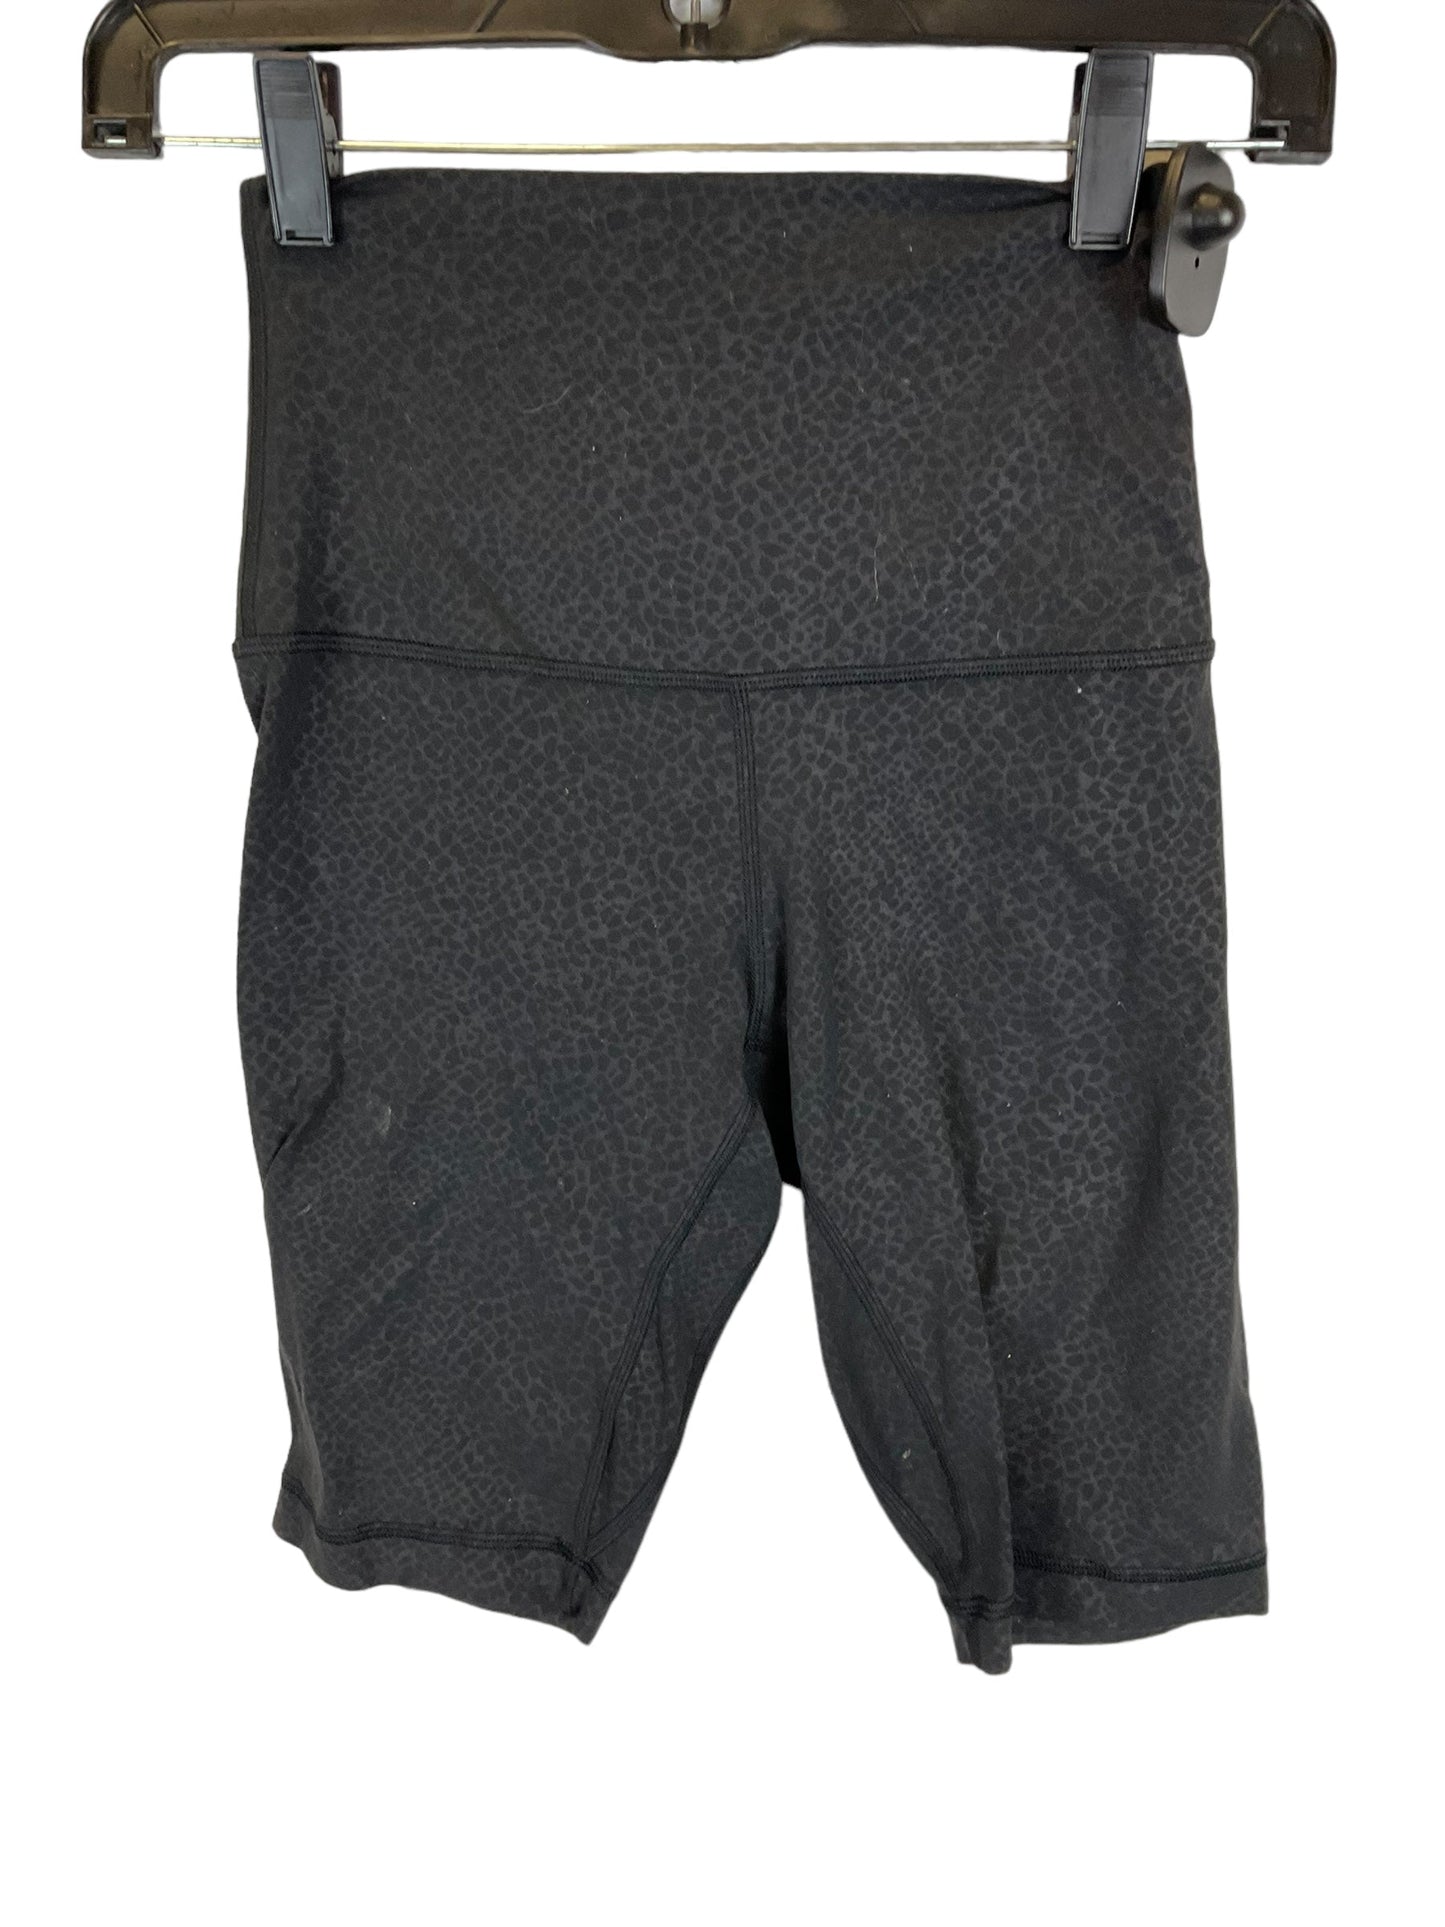 Black Athletic Shorts Lululemon, Size 4